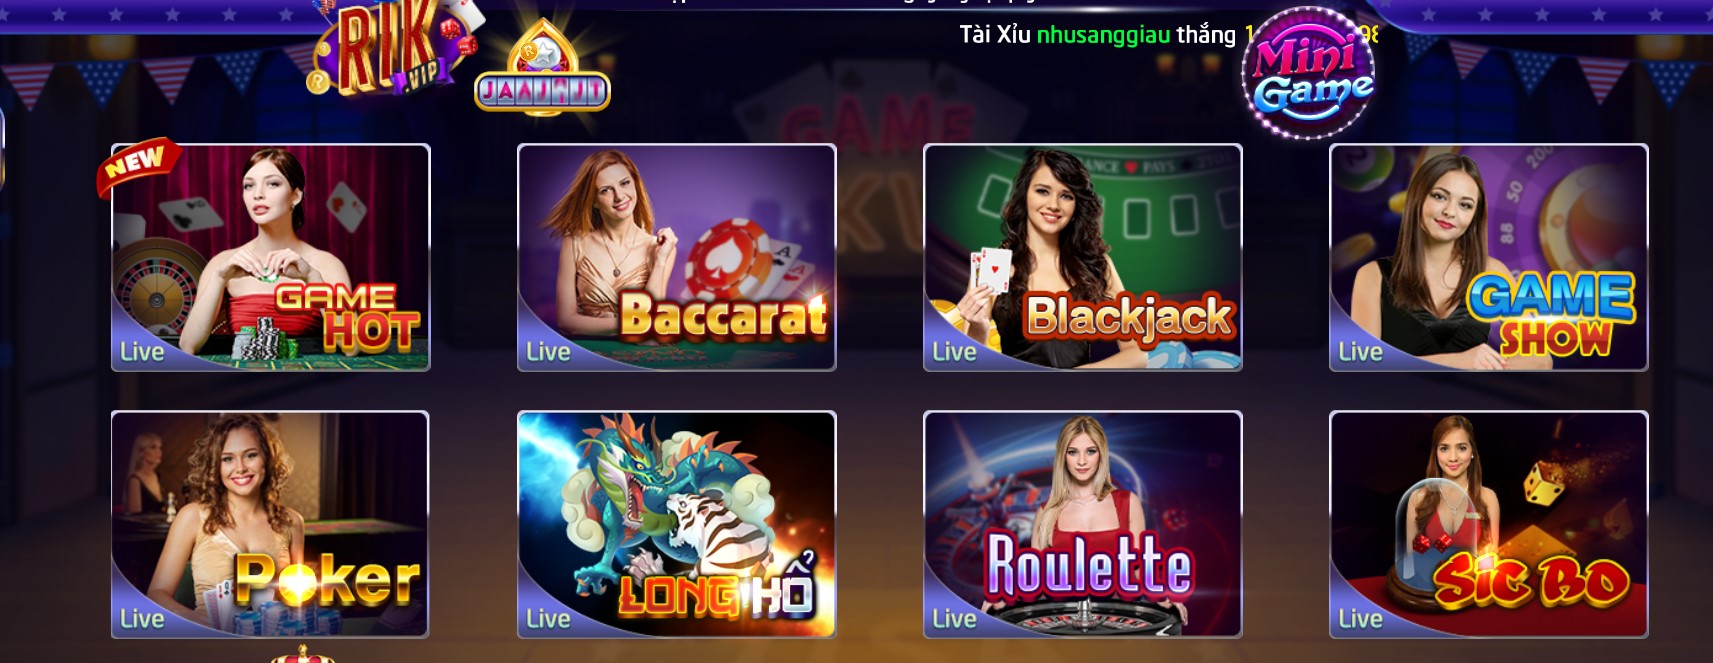 Hệ thống game trên Live Casino